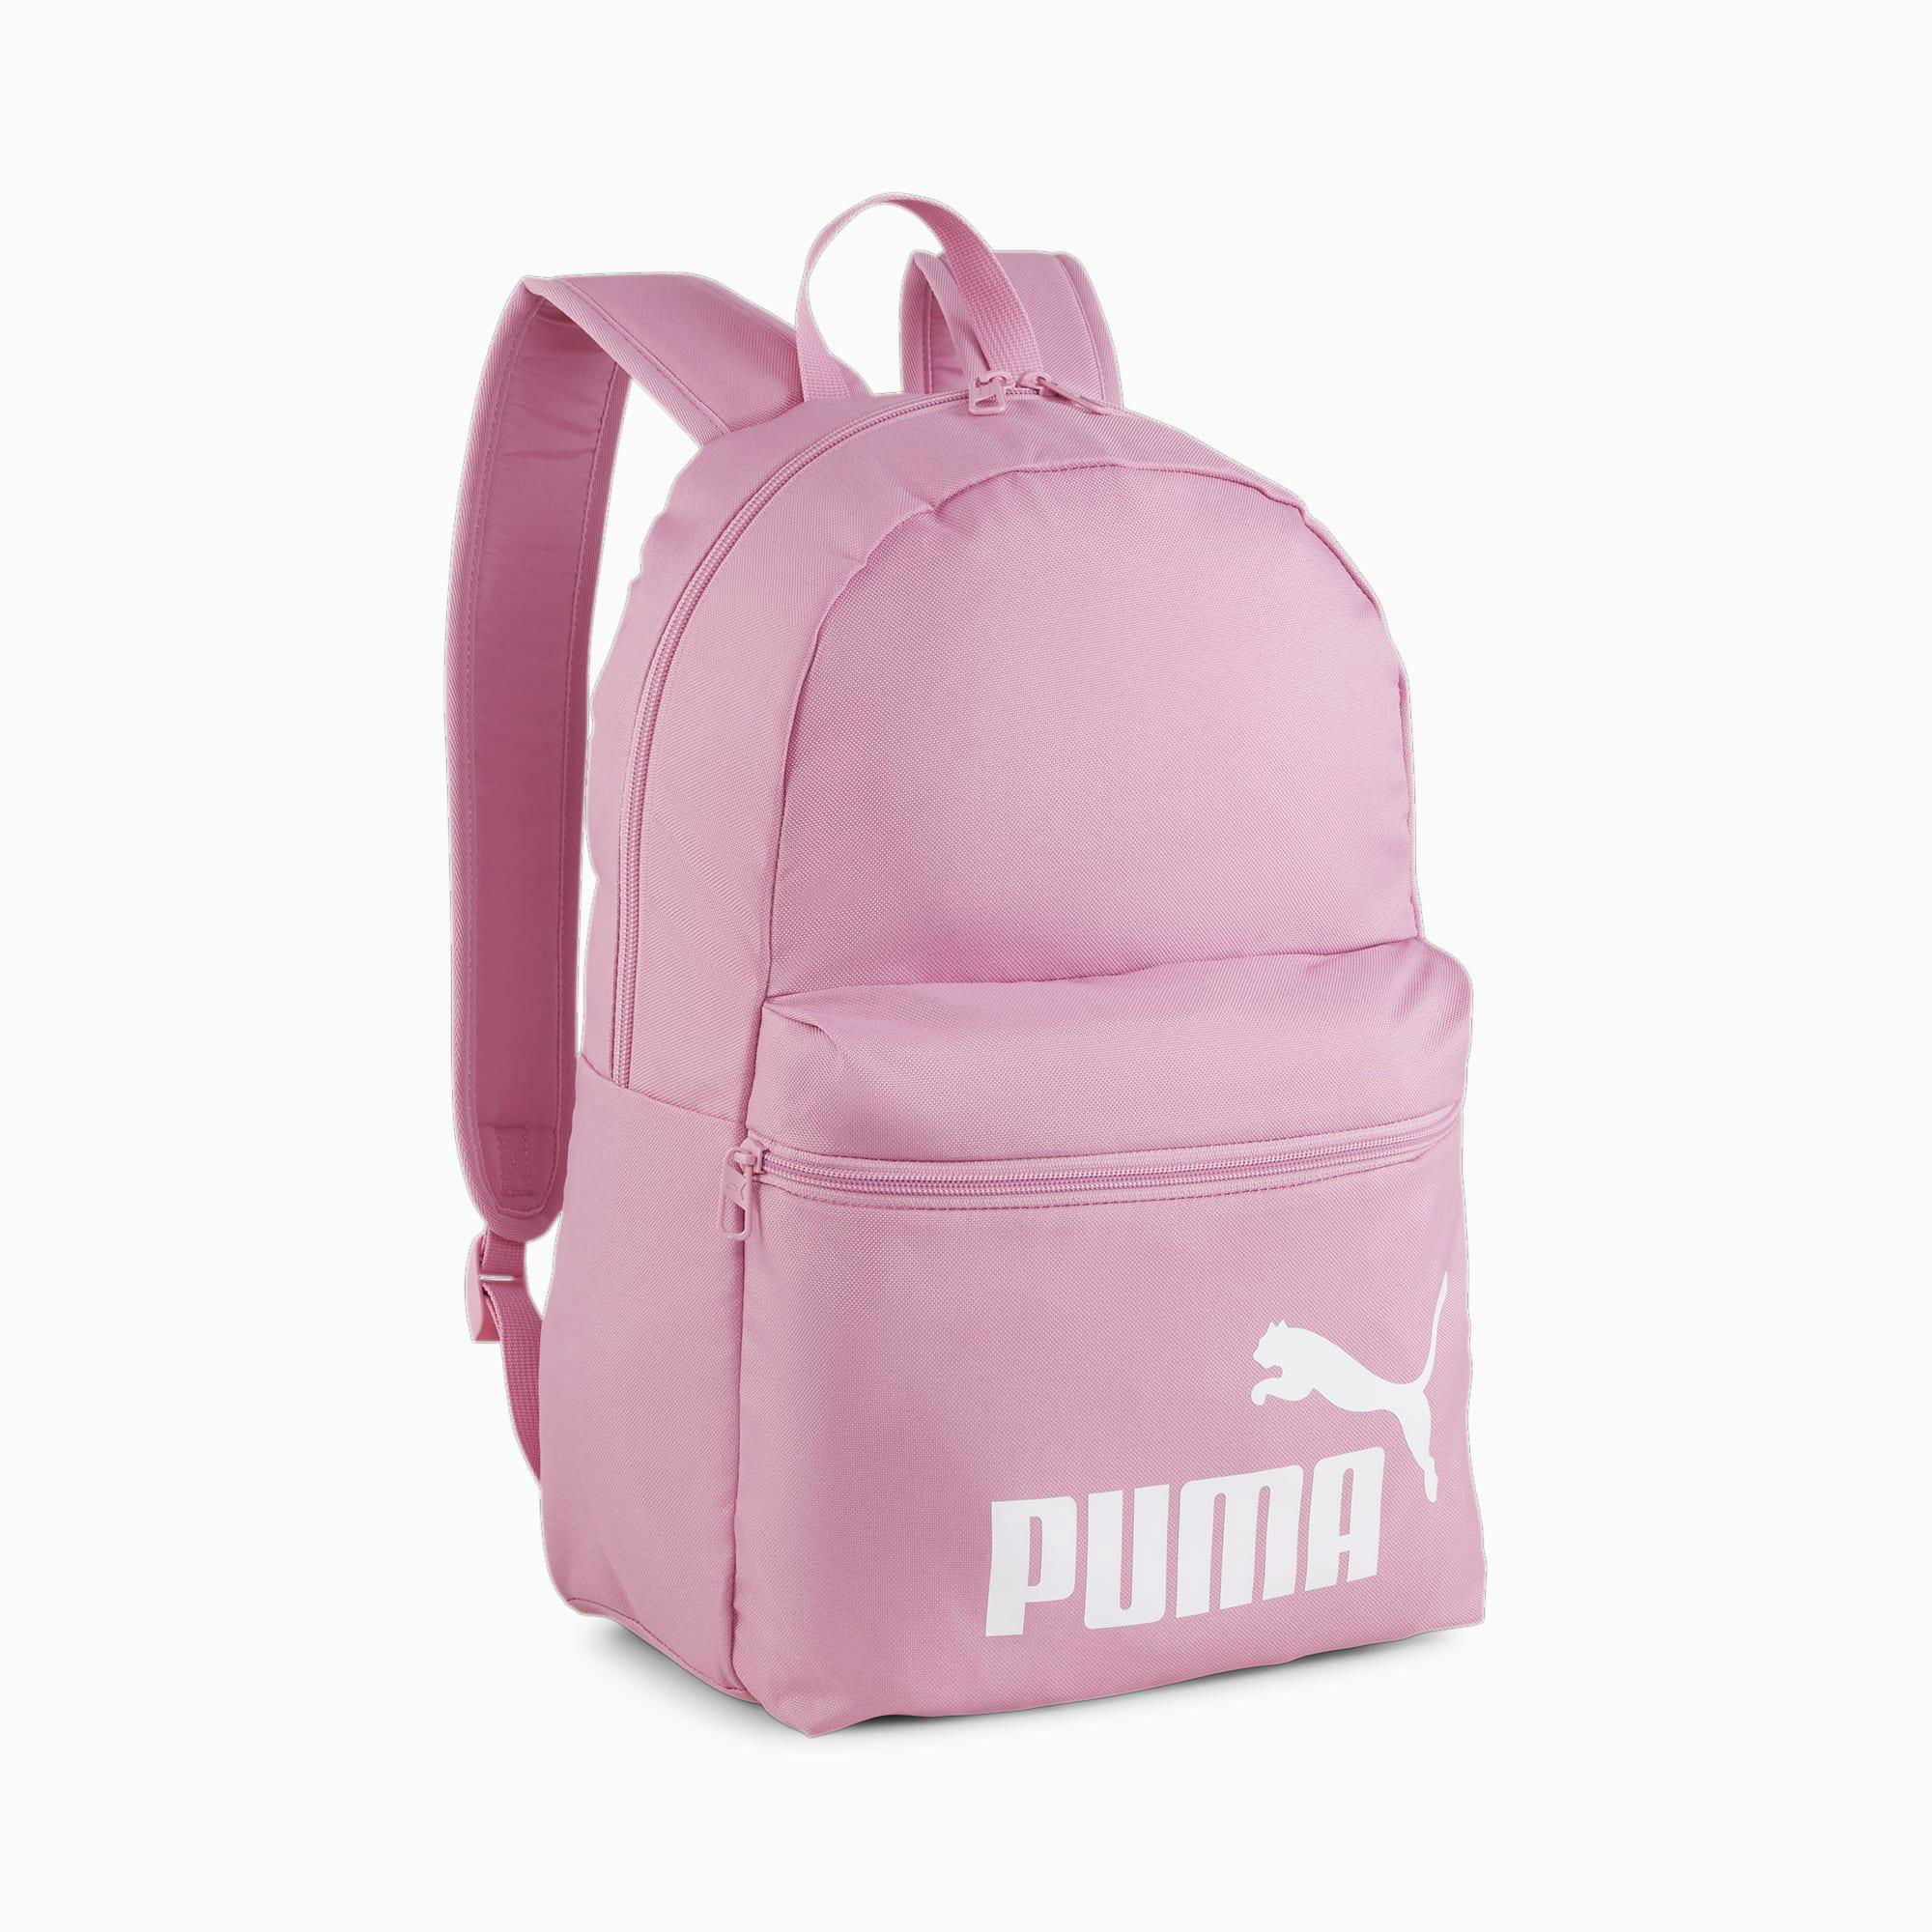 PUMA Phase Backpack by PUMA